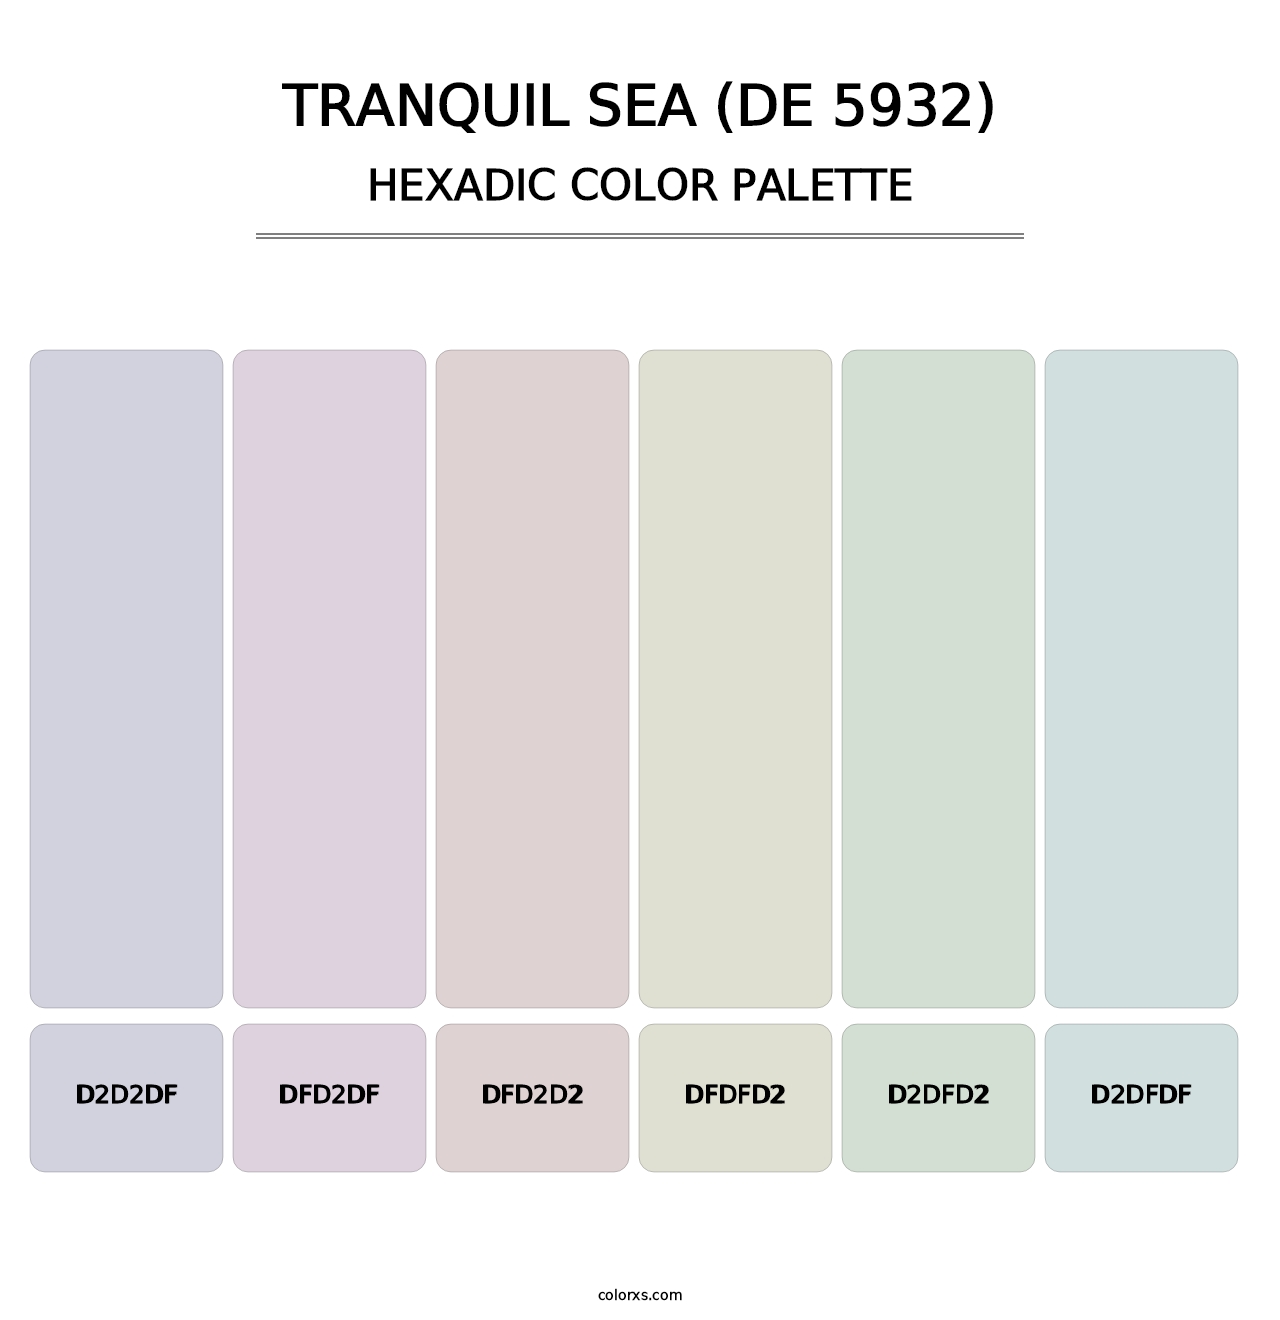 Tranquil Sea (DE 5932) - Hexadic Color Palette